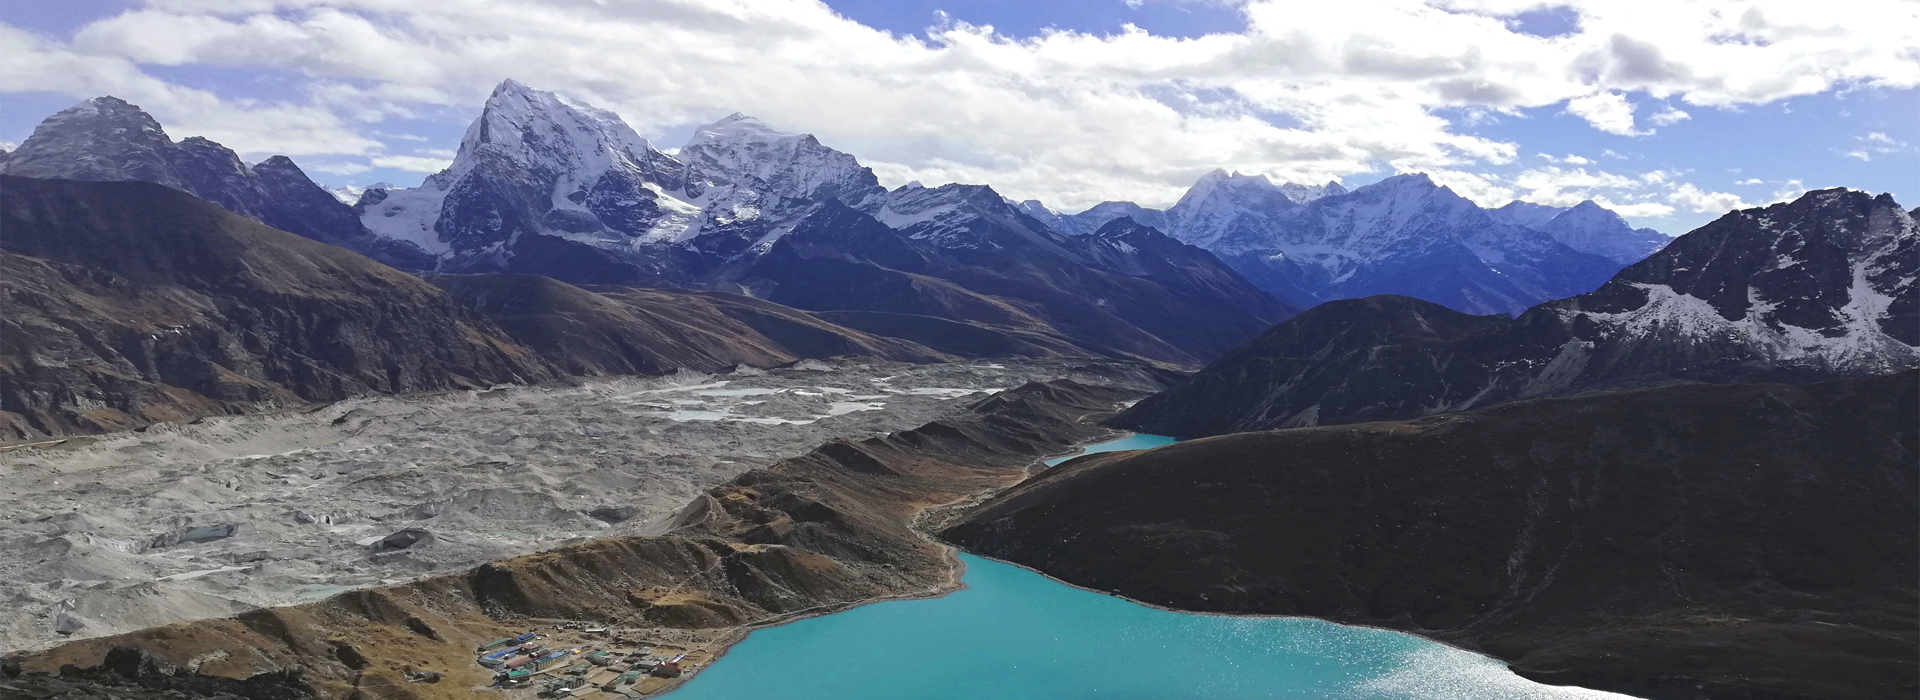 World’s Best Trekking Zone – Everest region